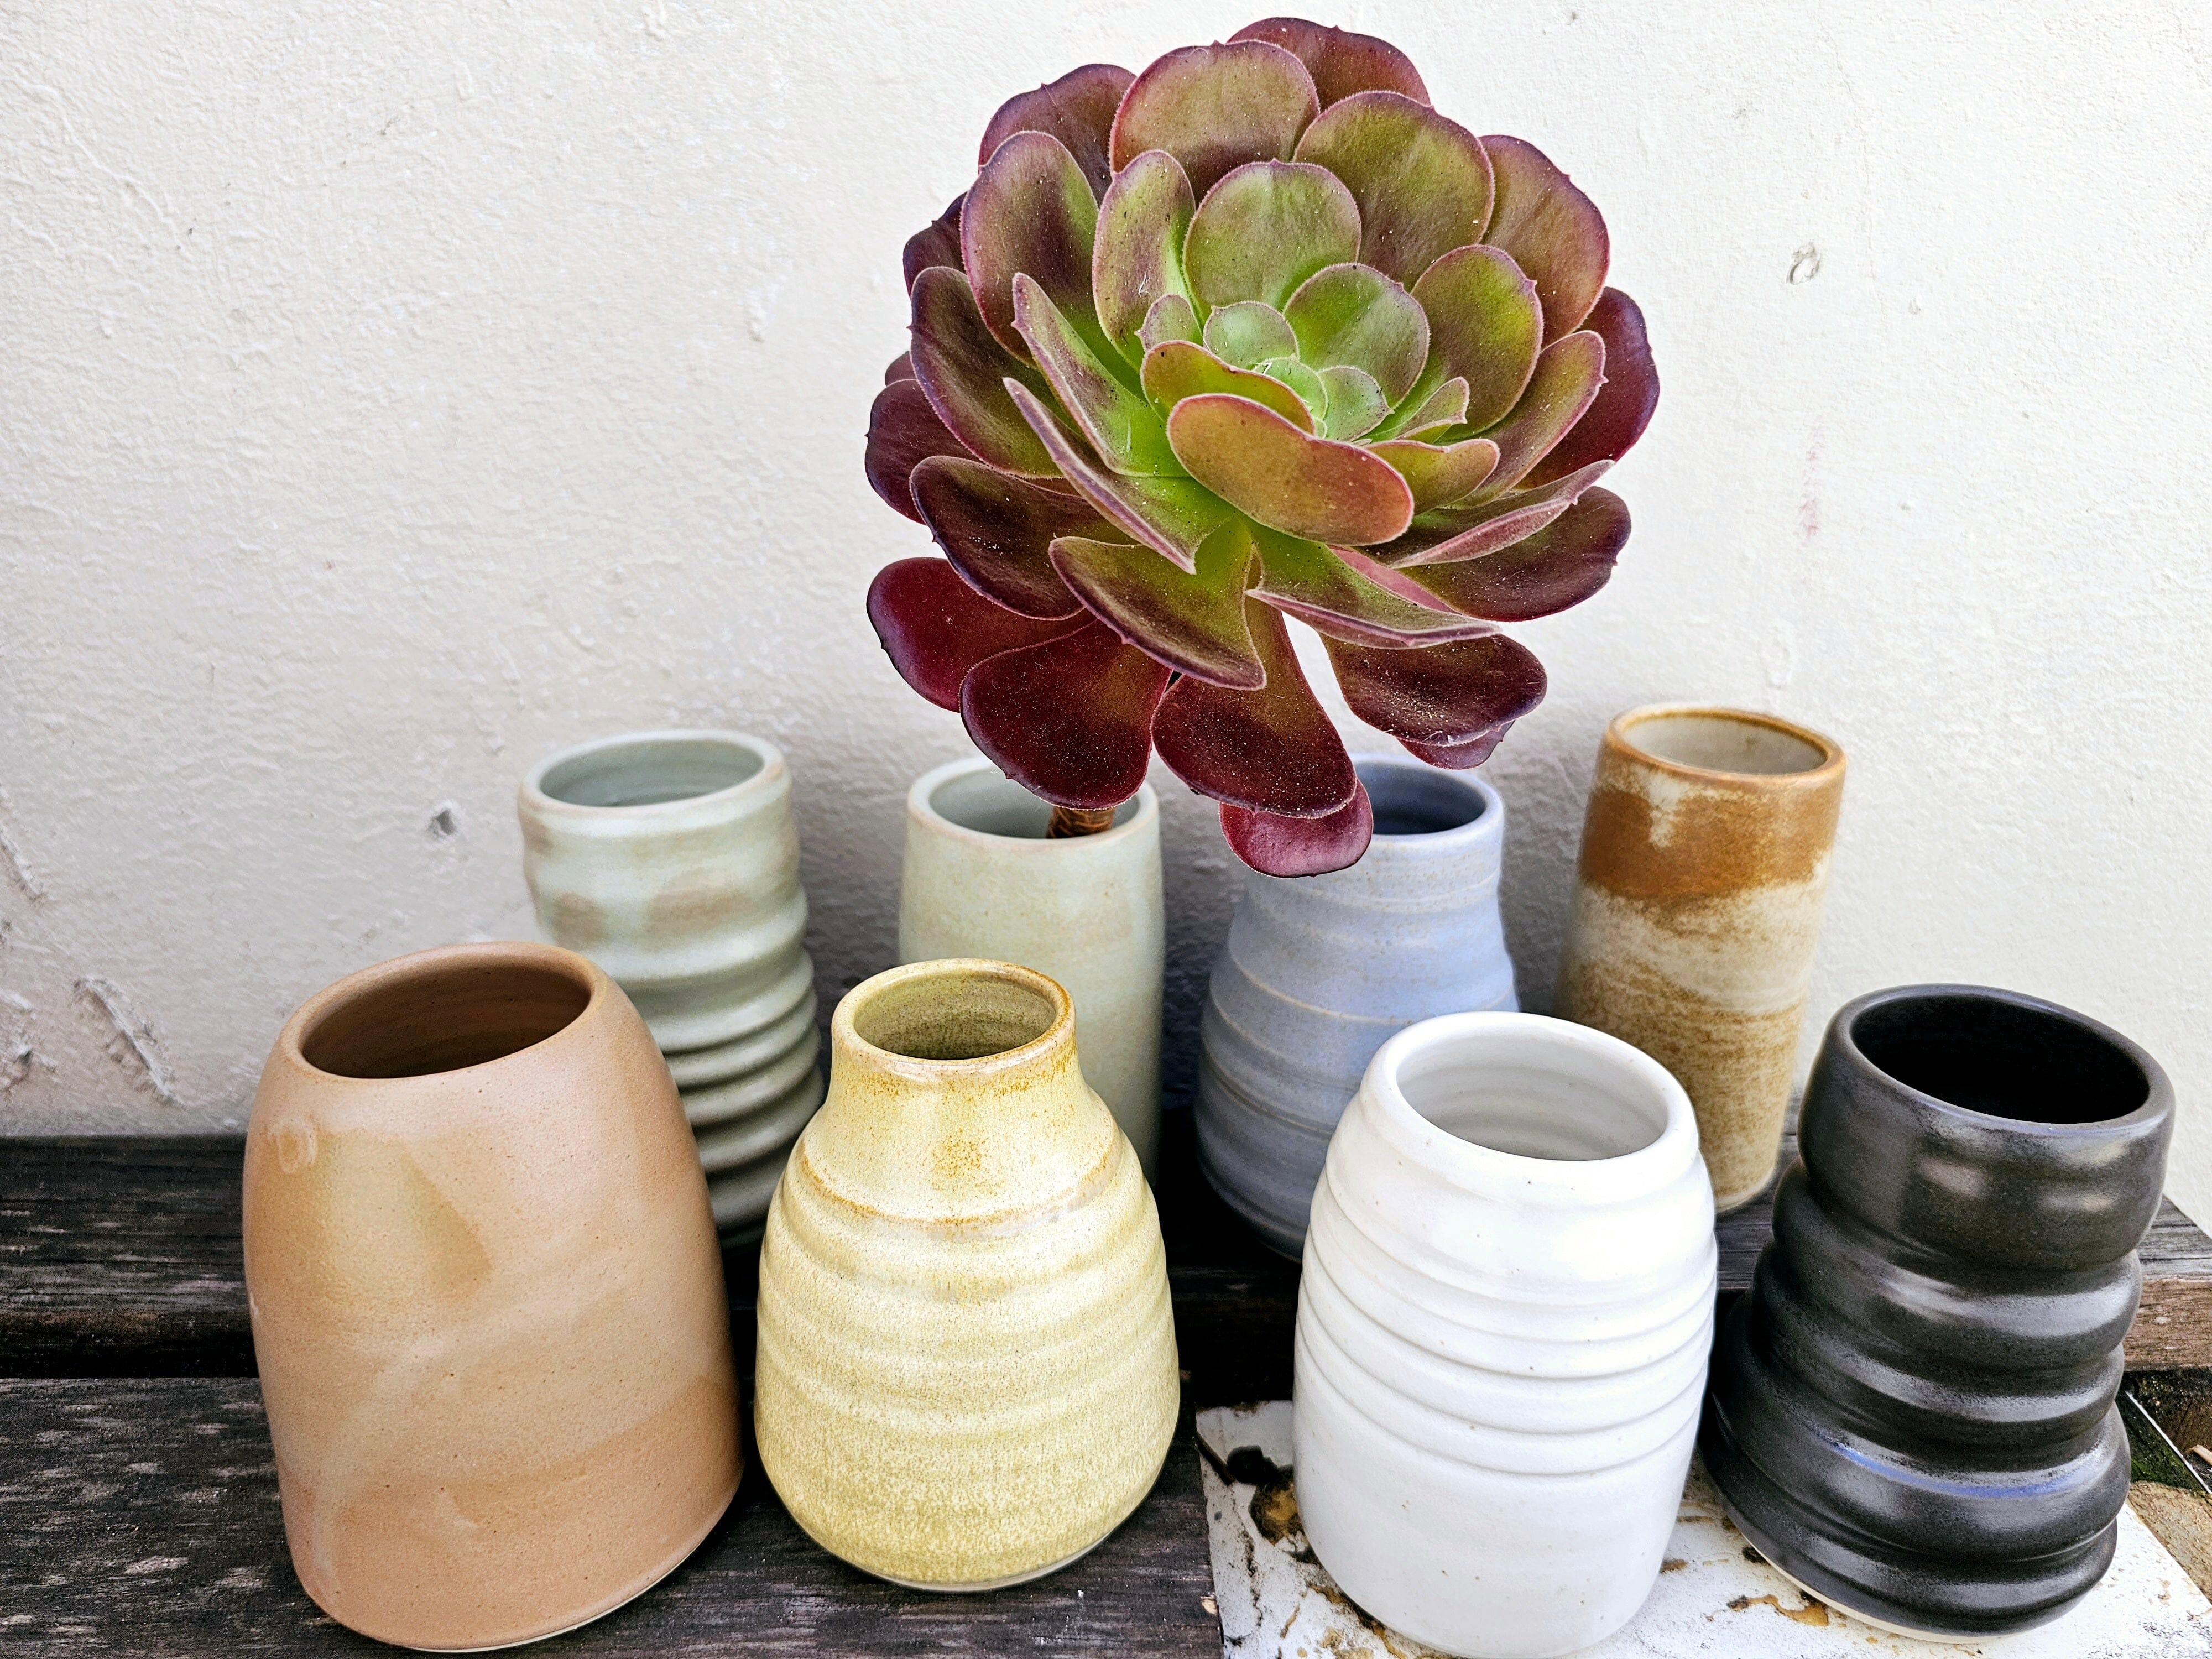 Handmade Ceramic Vases - The Little Mud Room Vase The Little Mud Room 